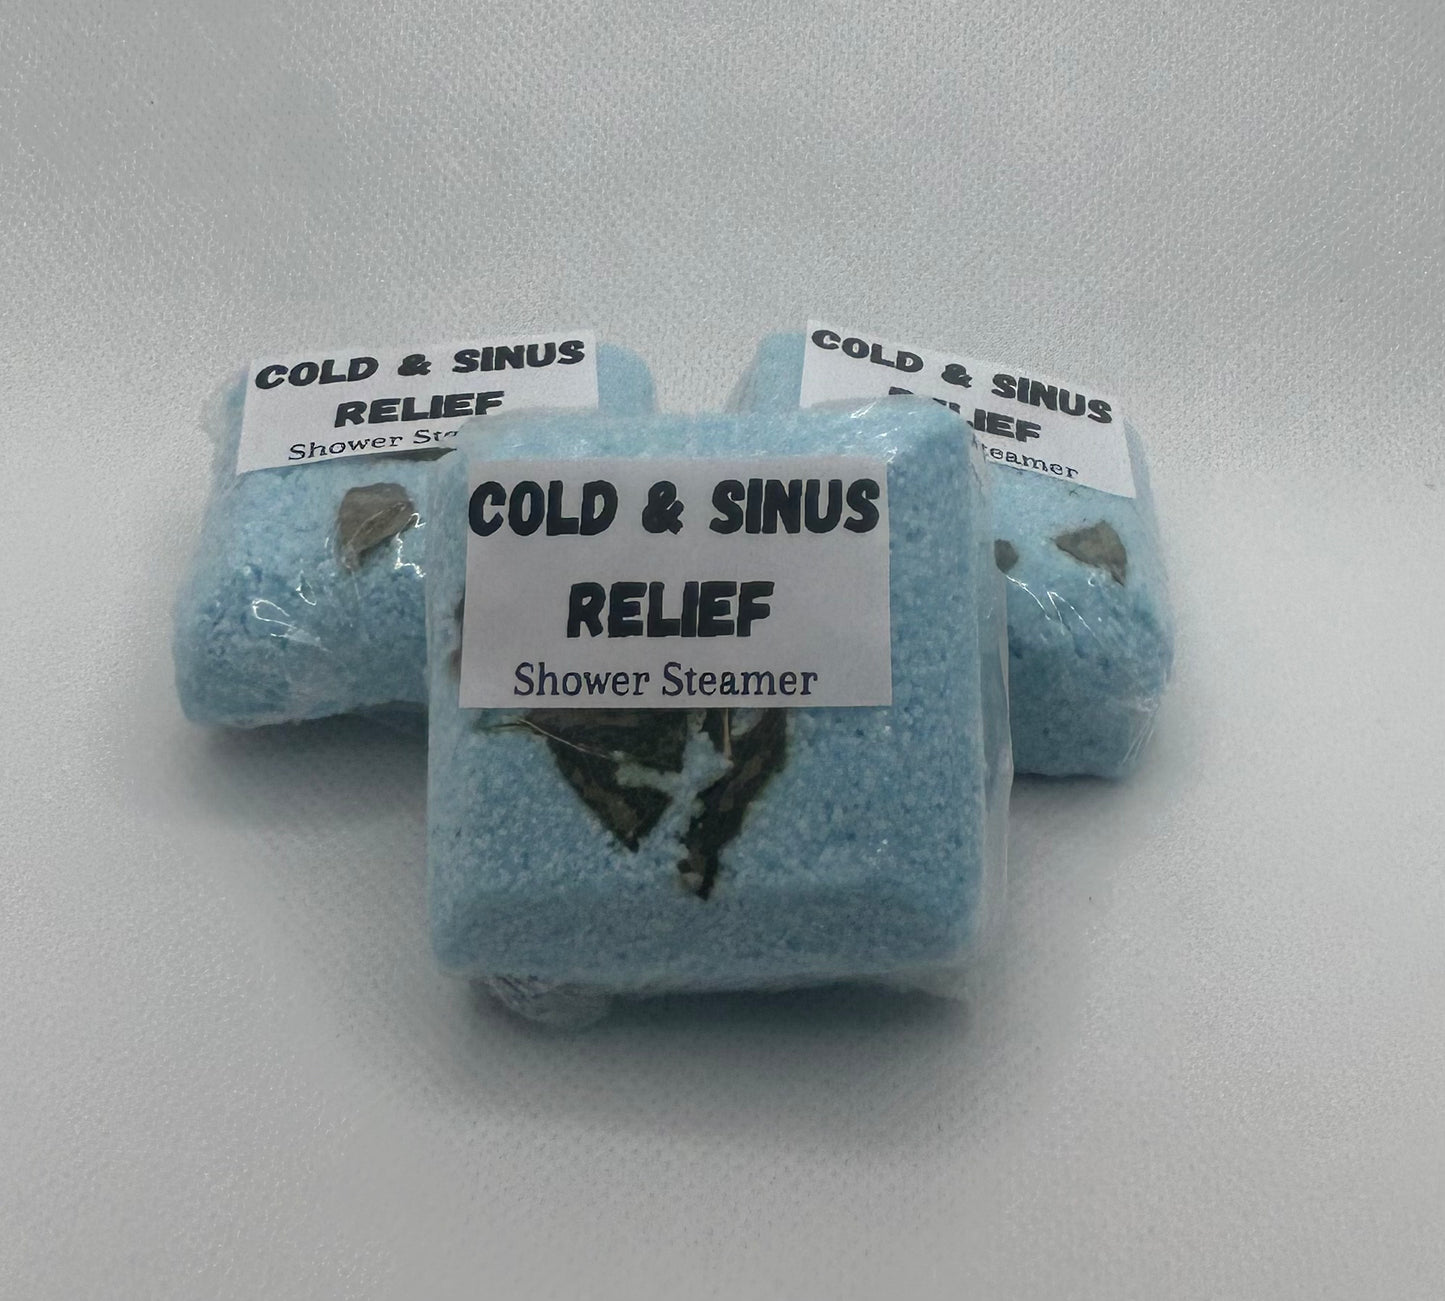 Cold & Sinus Relief Shower Steamer